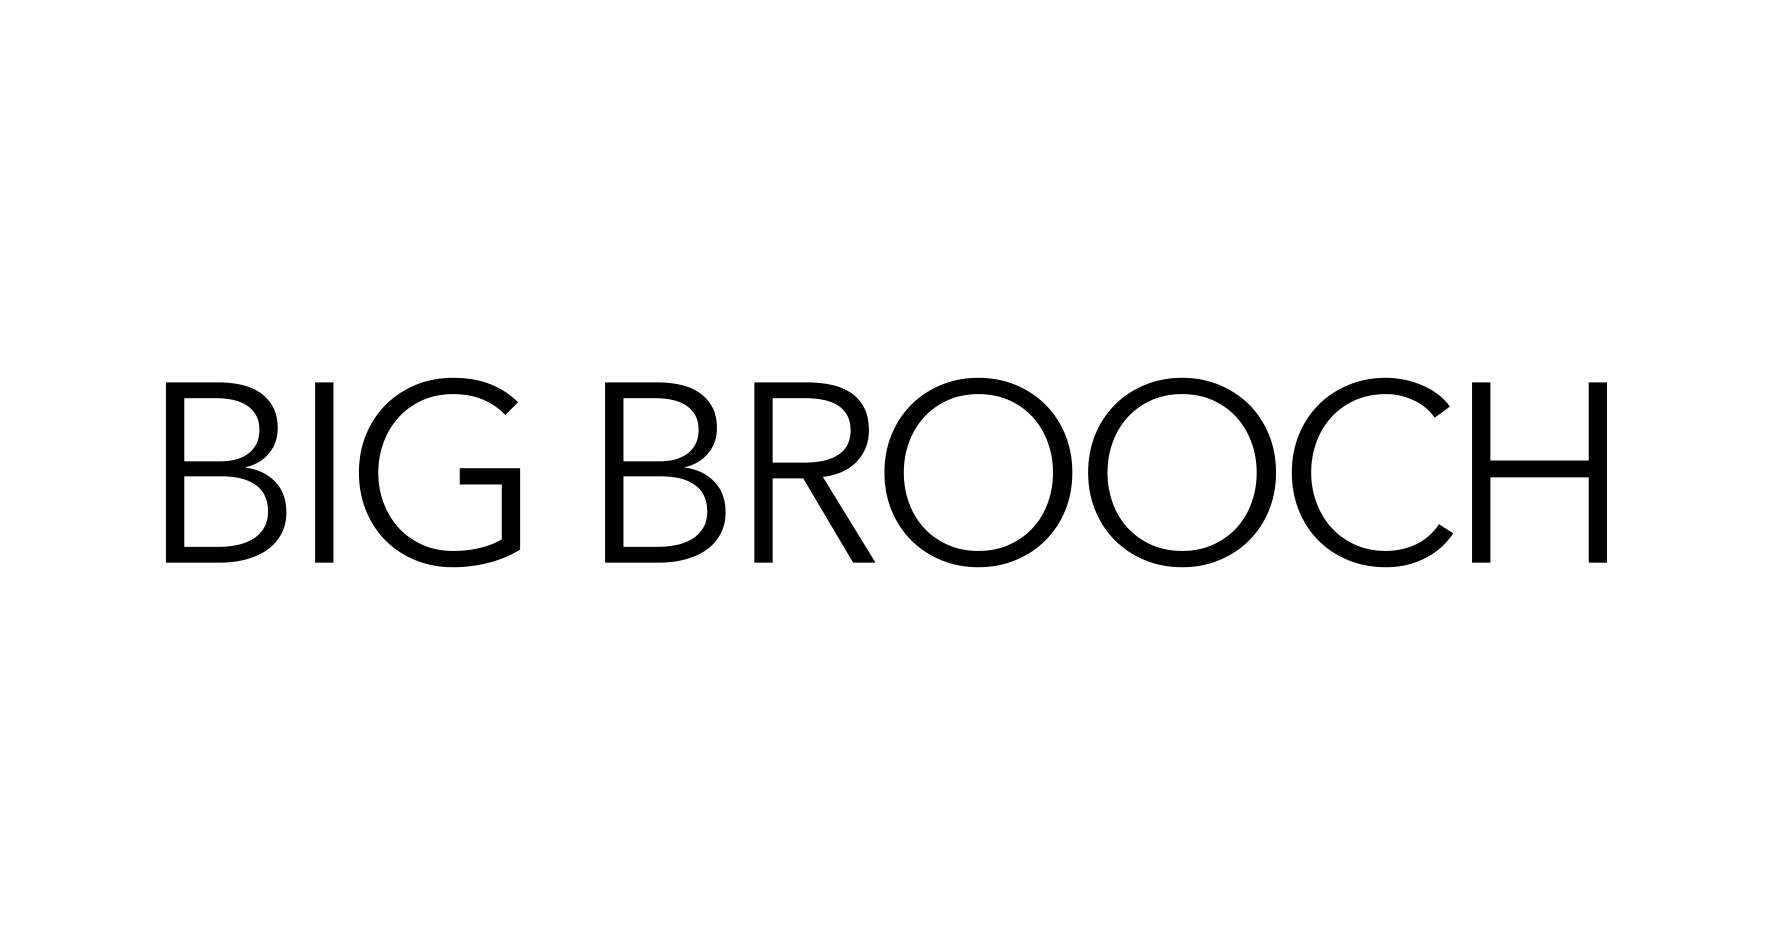 BIG BROOCH Одежда и аксессуары, купить онлайн, BIG BROOCH в универмаге Bolshoy